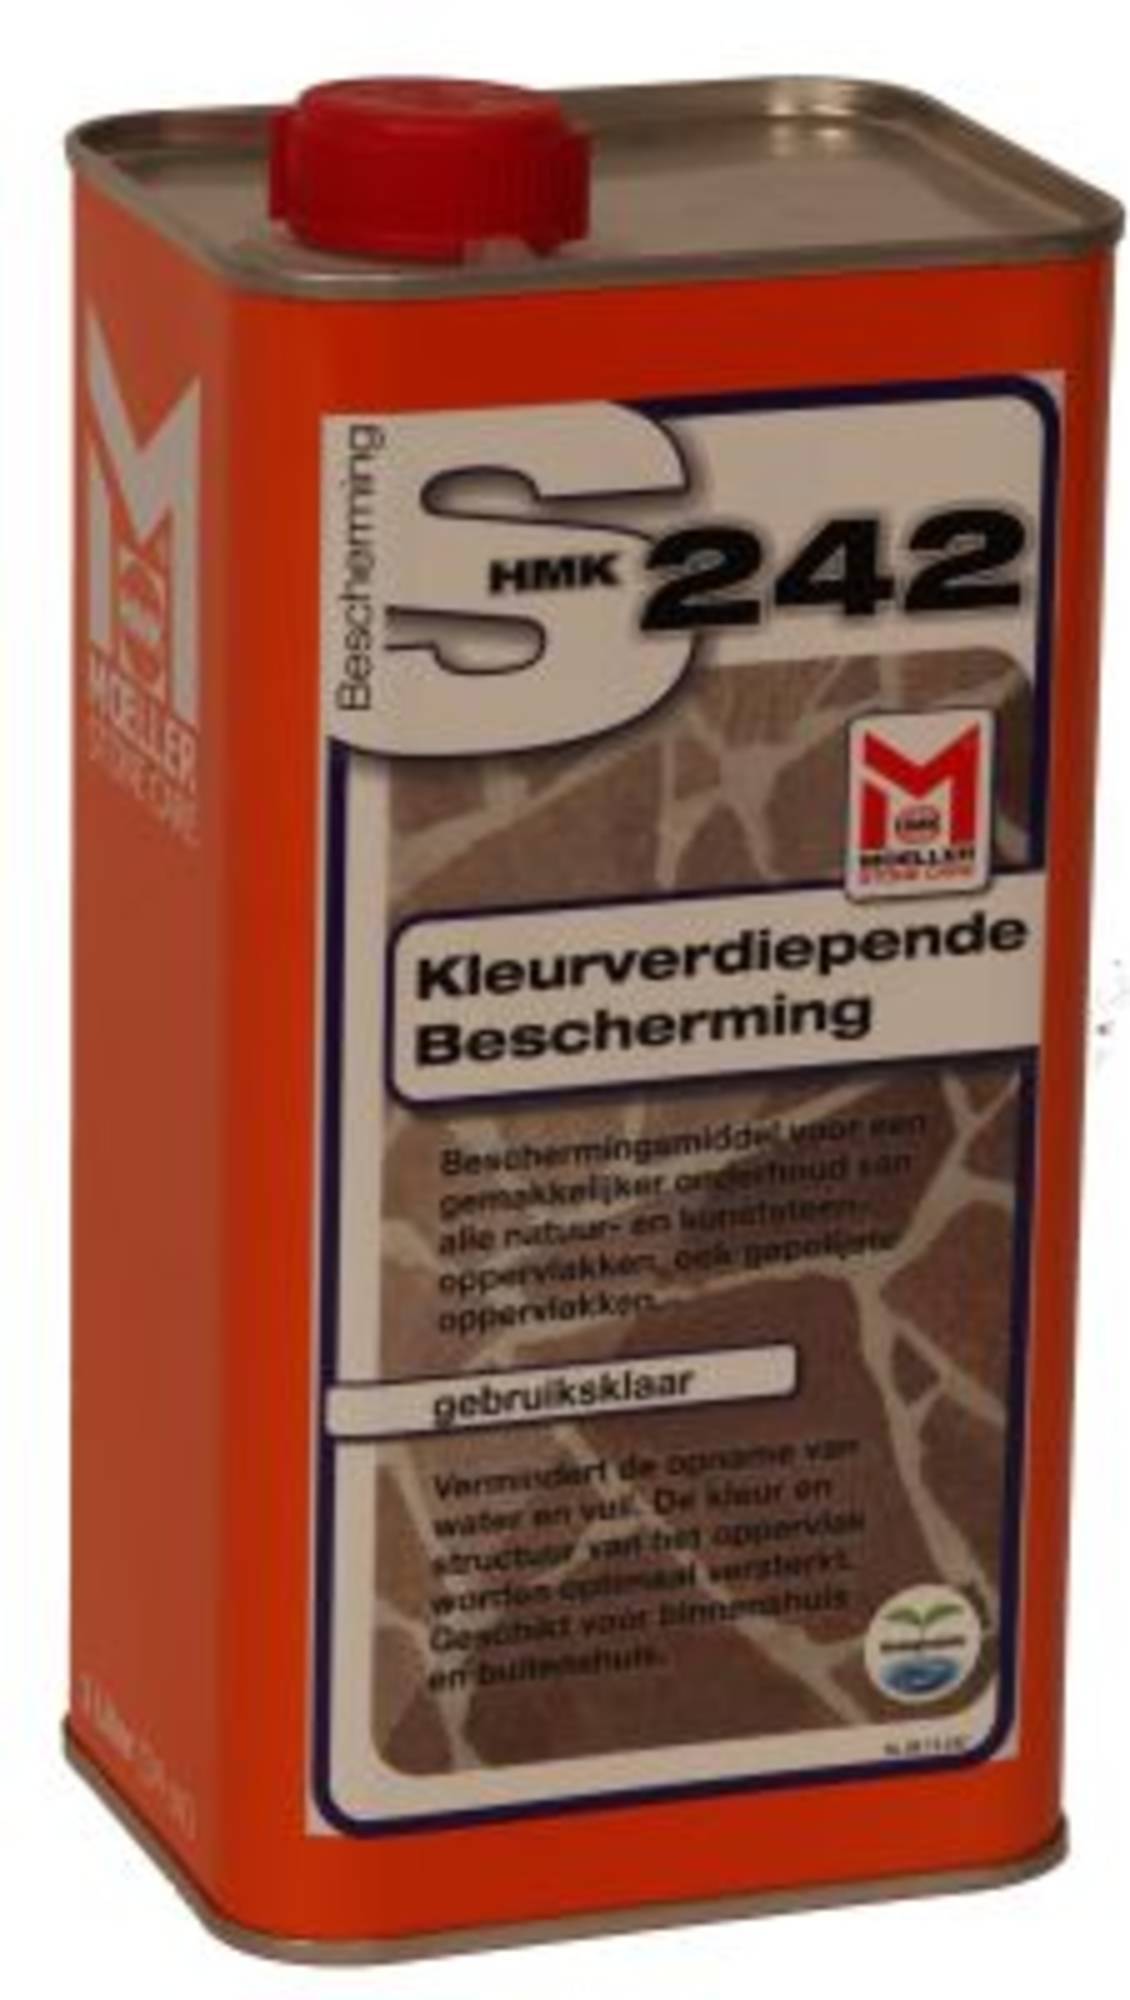 Hmk S242 Kleurverdiepende bescherming - 1 ltr Impregneermiddel voor natuursteen met kleurverdiepende werking